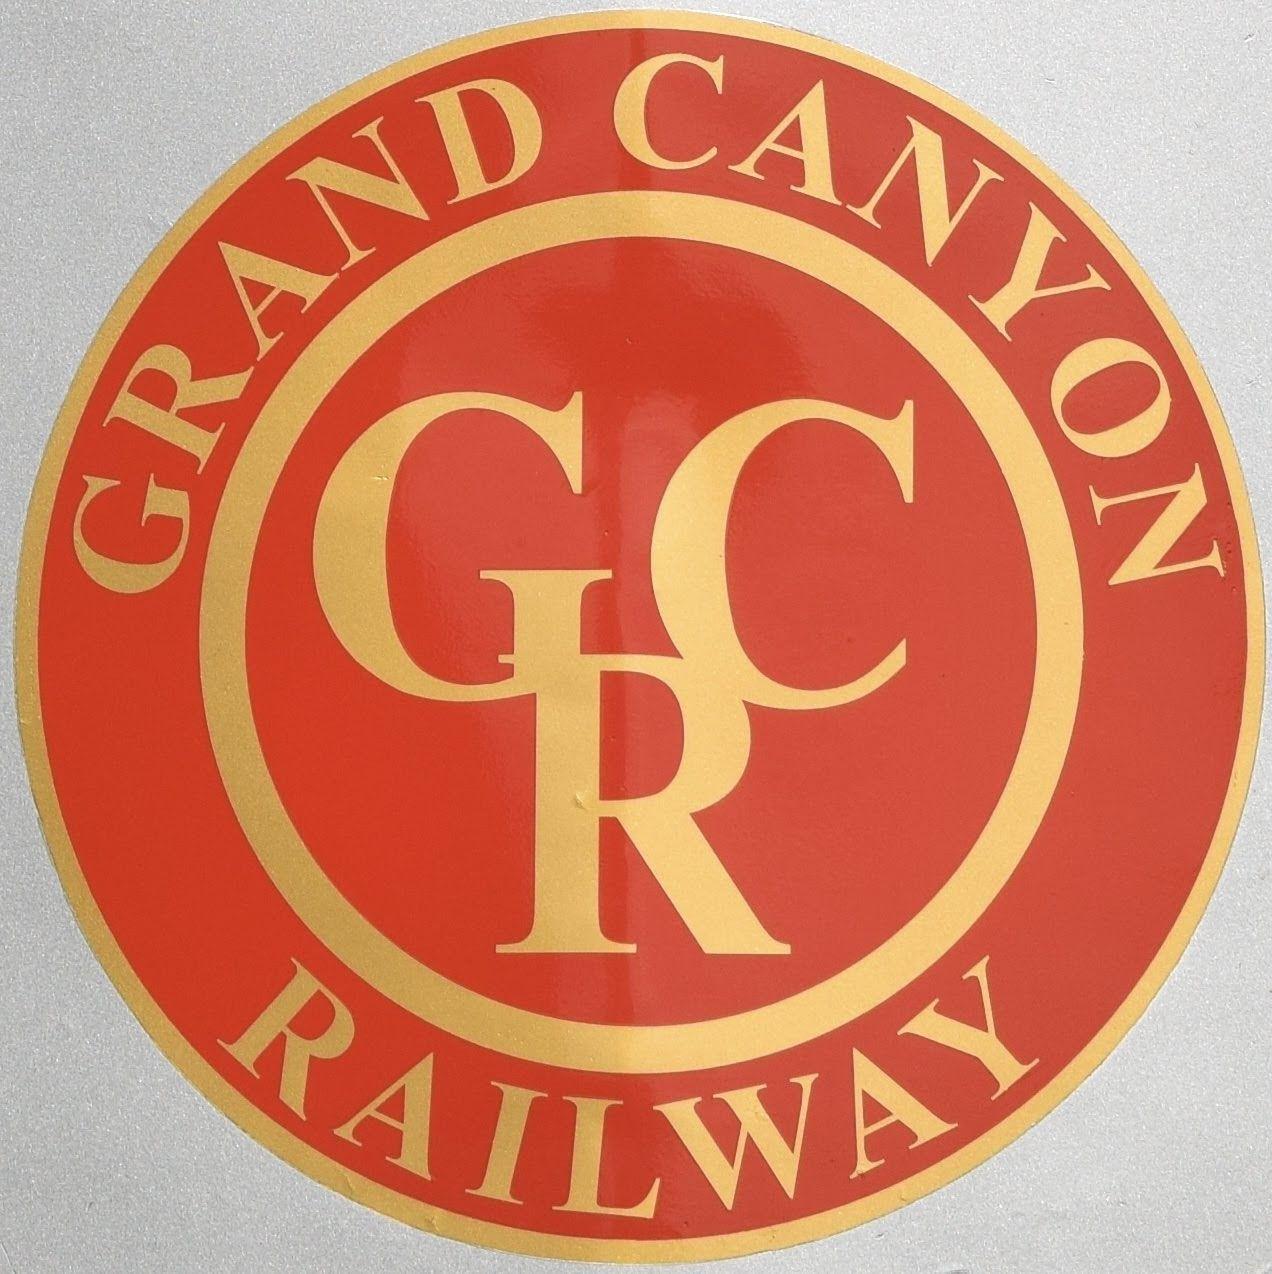 Grand Canyon Railway Logo - HappiLeeRVing: All Aboard the Grand Canyon Railway